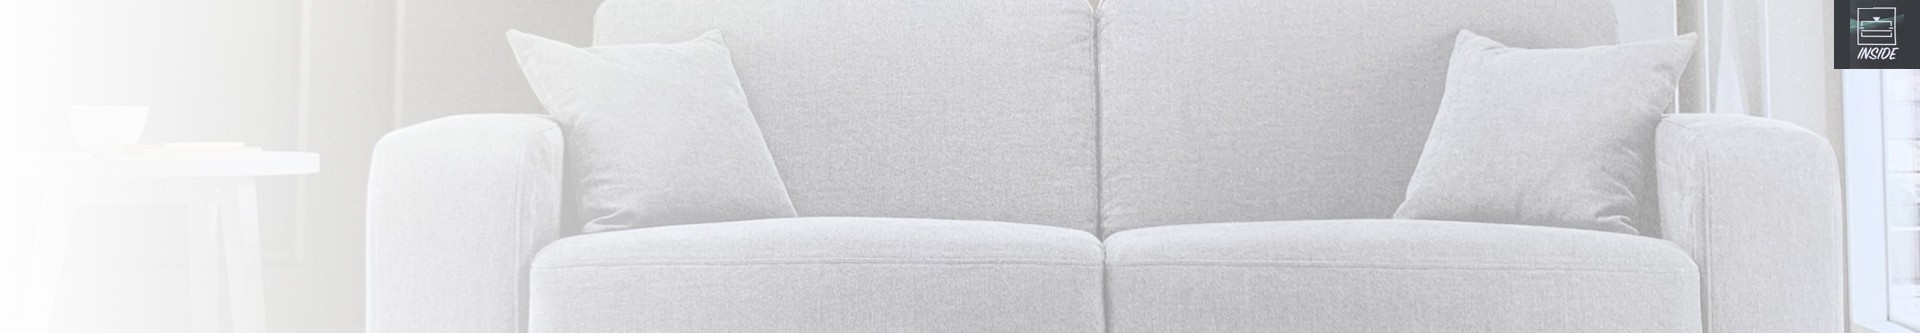 Canapés fixes Inside : Votre sofa au meilleur prix - LMDL